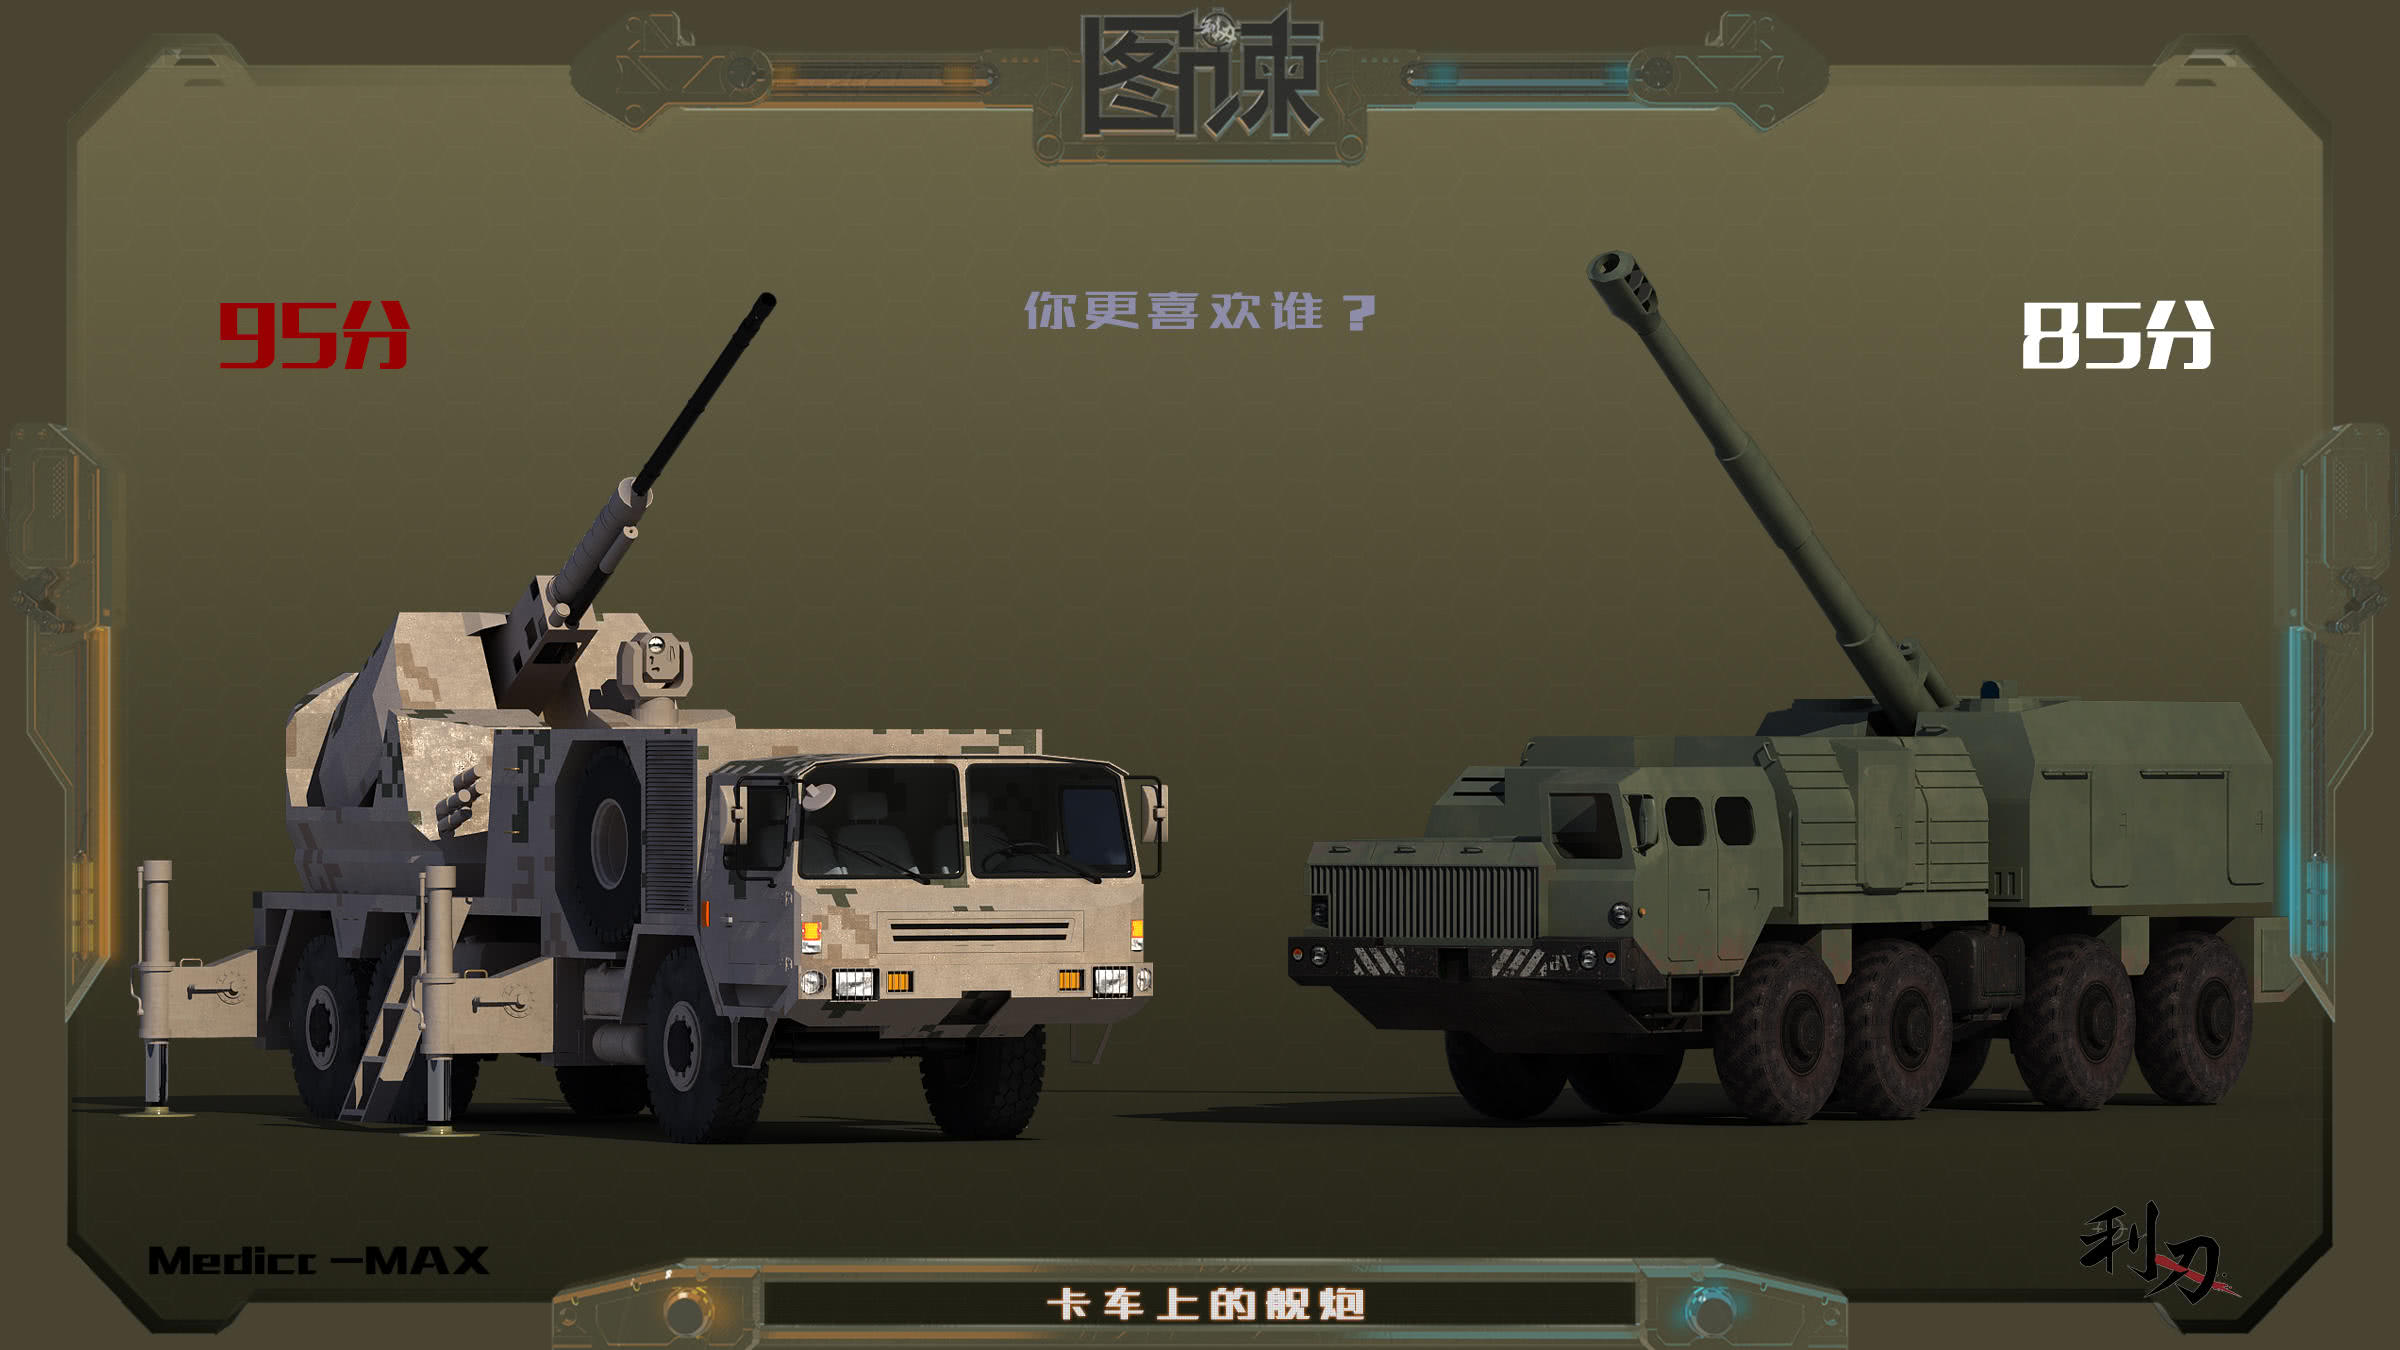 图谏cg:054a的舰炮安在卡车上!中国军工的想象力够强大